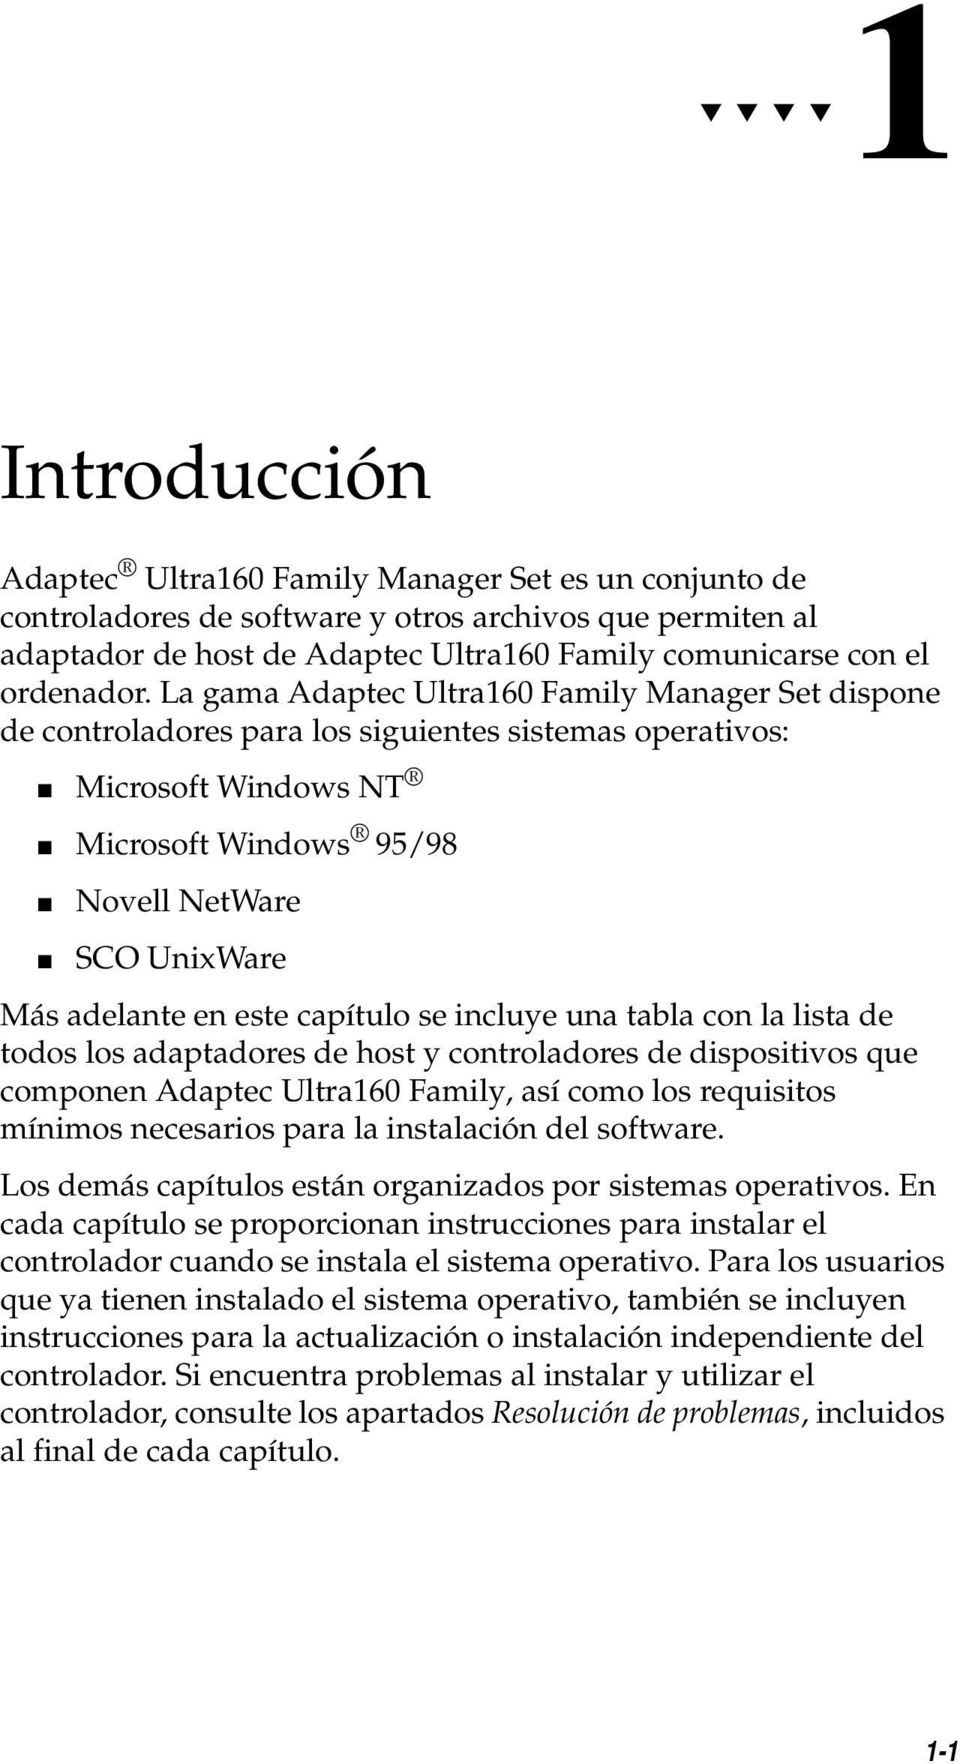 La gama Adaptec Ultra160 Family Manager Set dispone de controladores para los siguientes sistemas operativos: Microsoft Windows NT Microsoft Windows 95/98 Novell NetWare SCO UnixWare Más adelante en